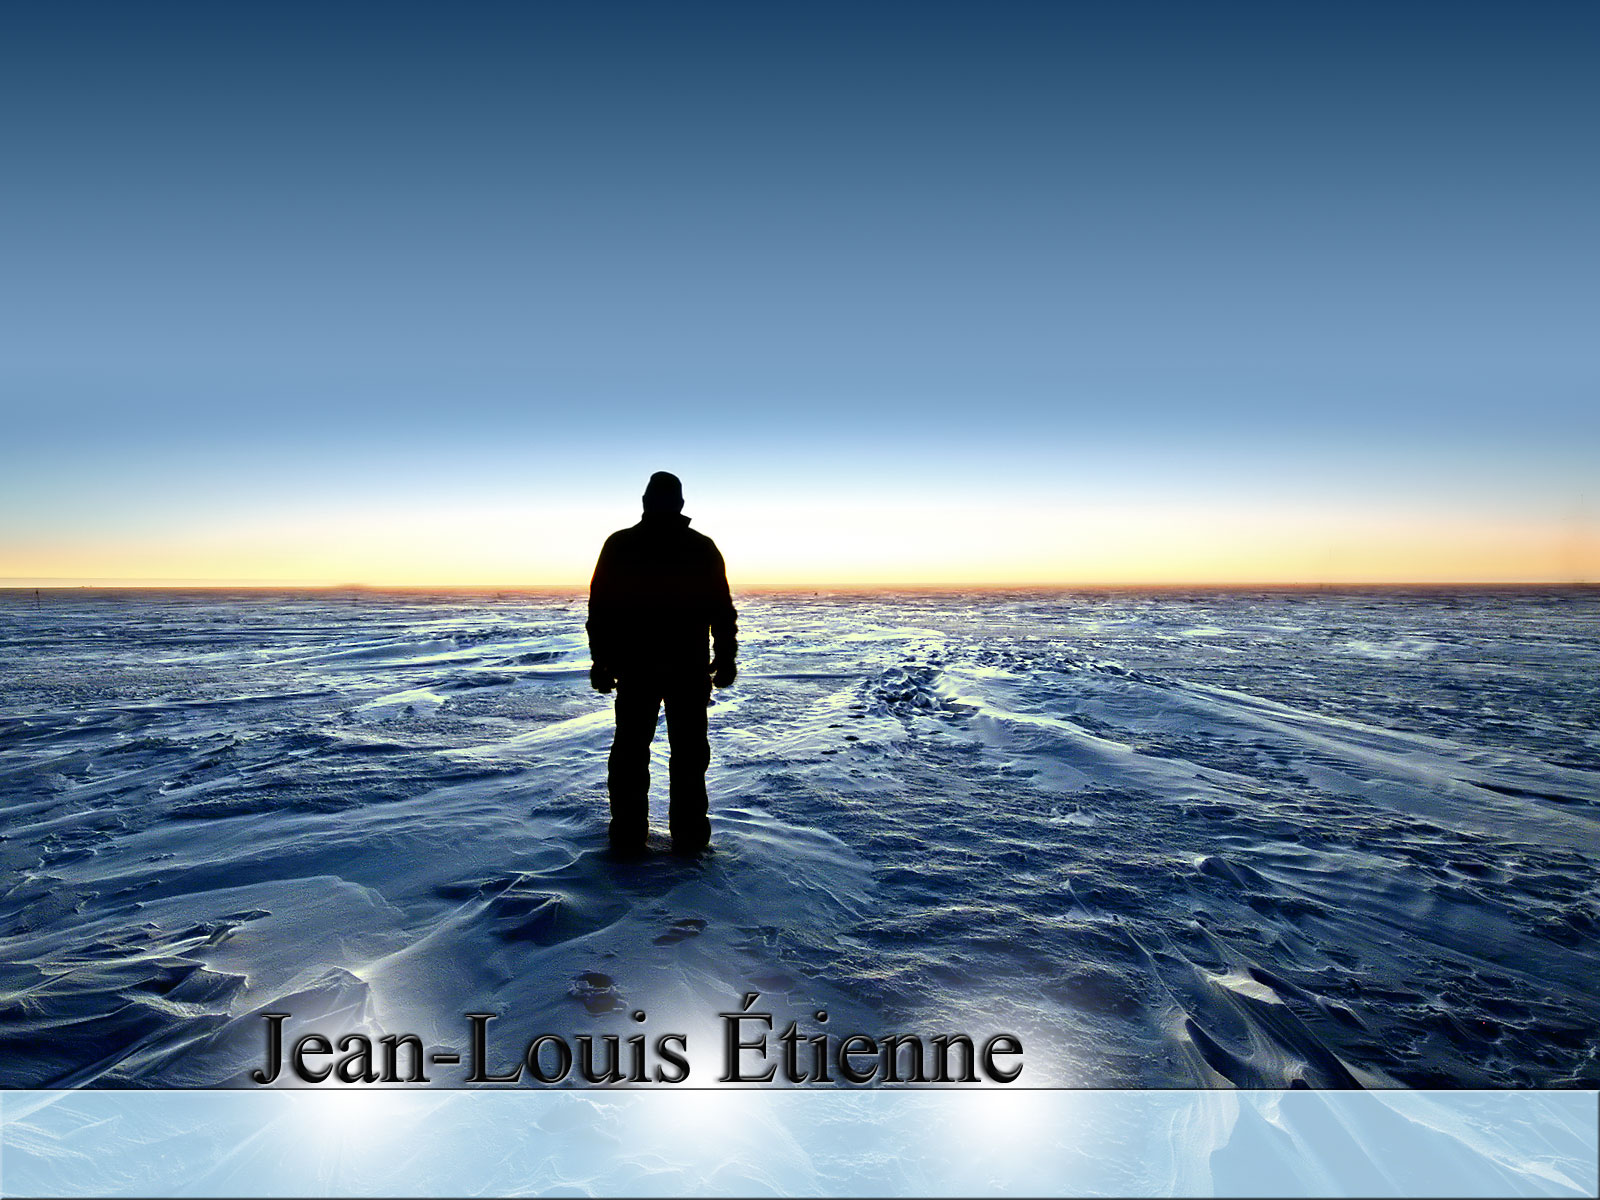 Jean-Louis Etienne - Pôle nord seul et à ski